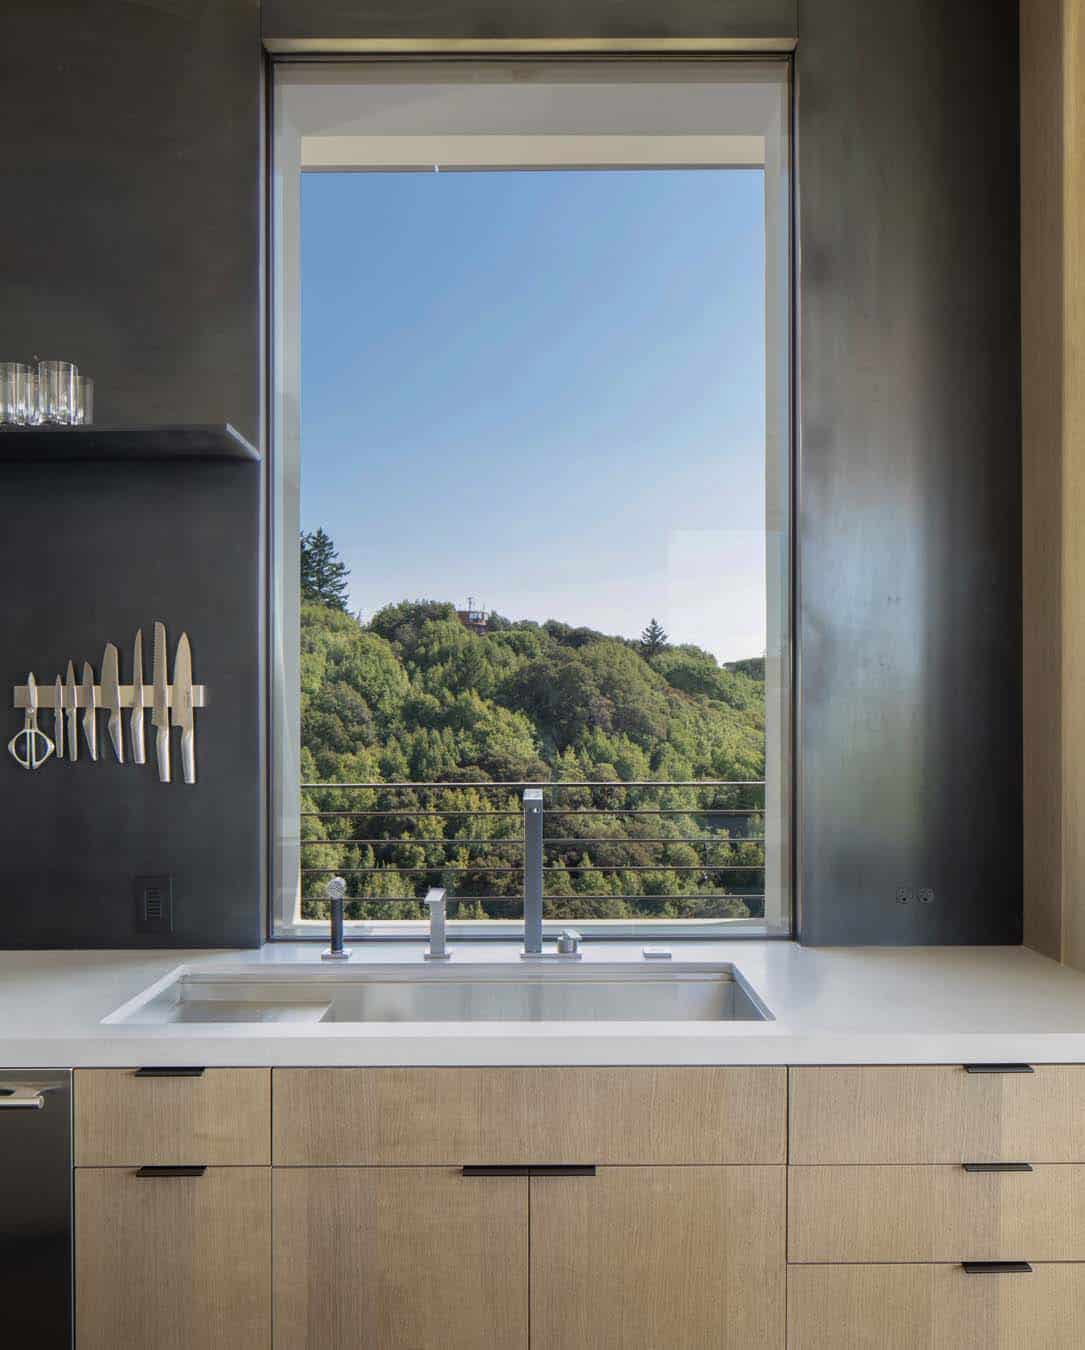 modern-kitchen-sink-with-a-window-view